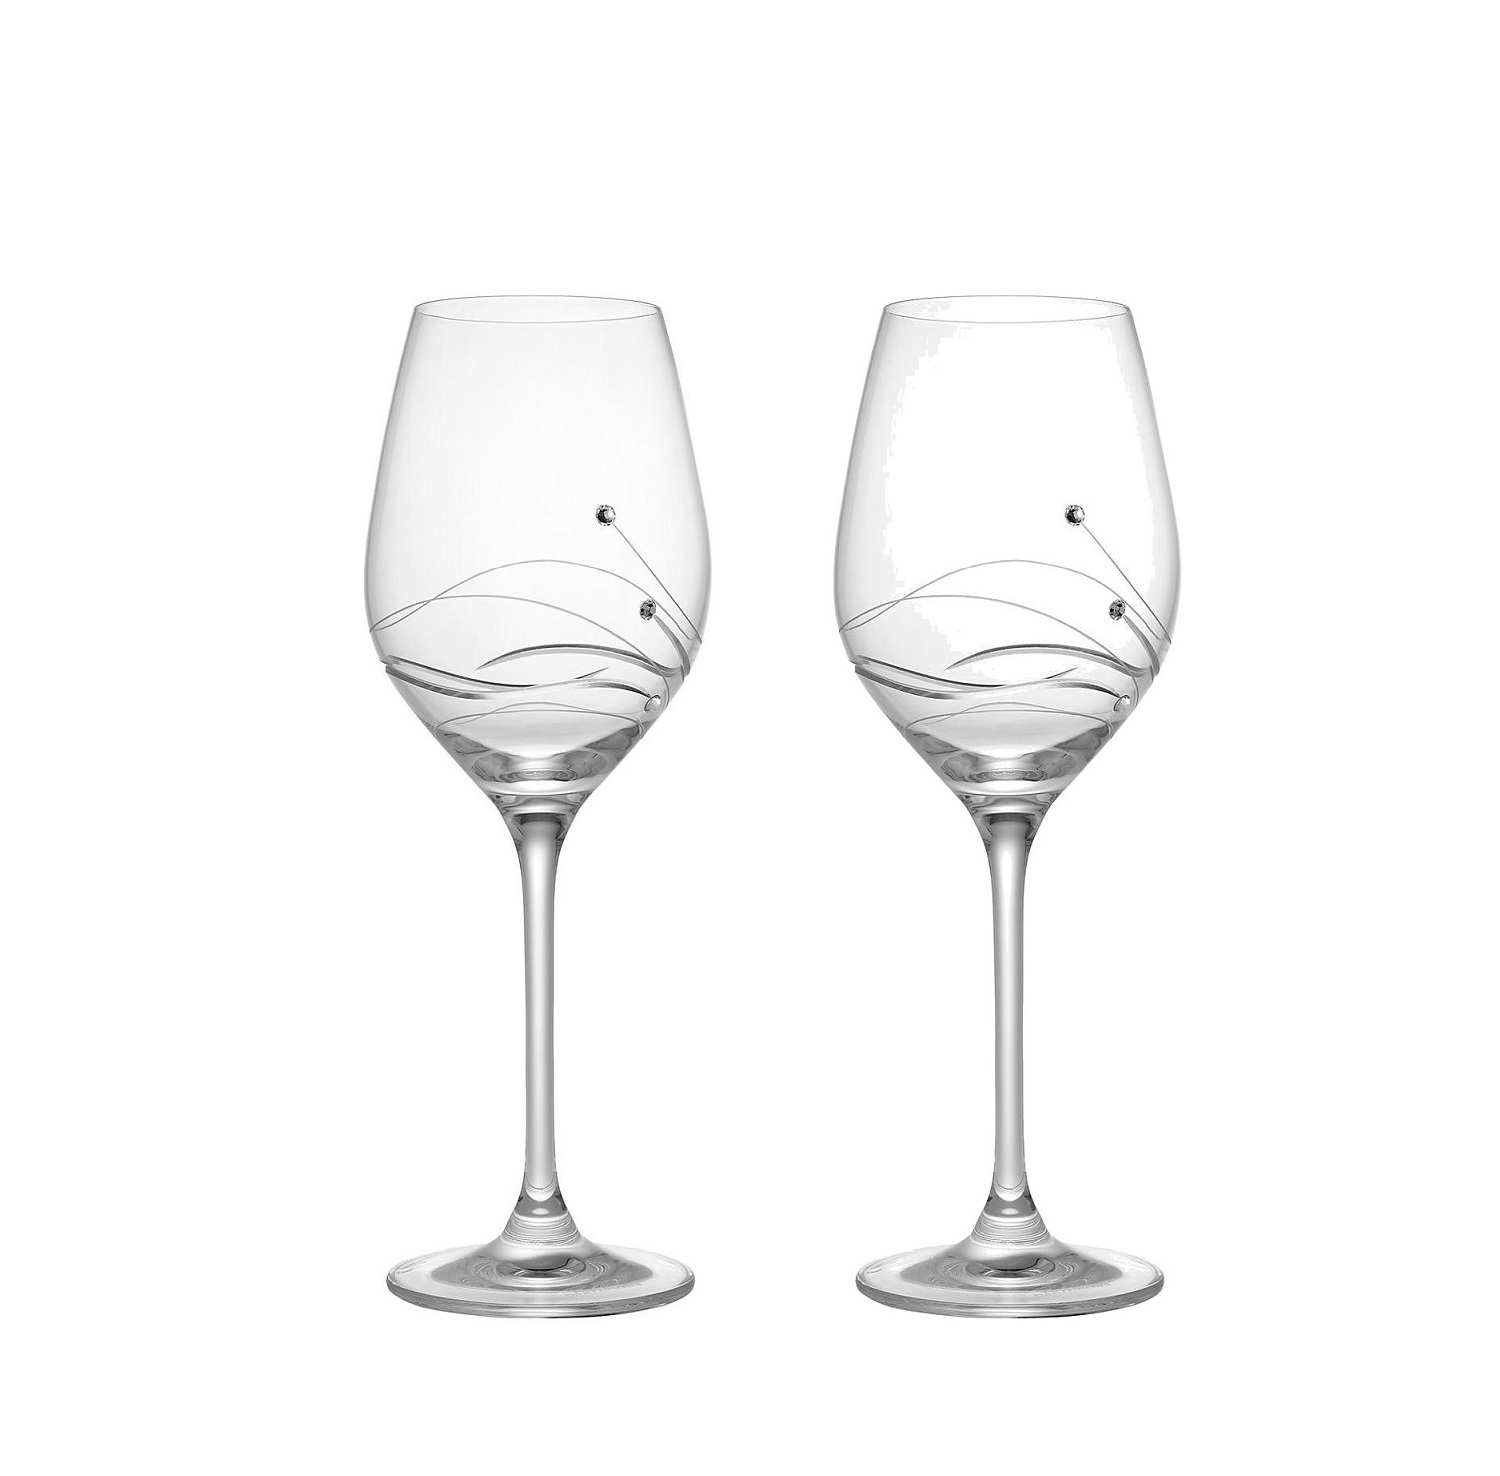 Dartington Crystal Handmade Swarovski Glitz Wine Pair Glasses  New: Swarovski Wine Glasses: Wine Glasses